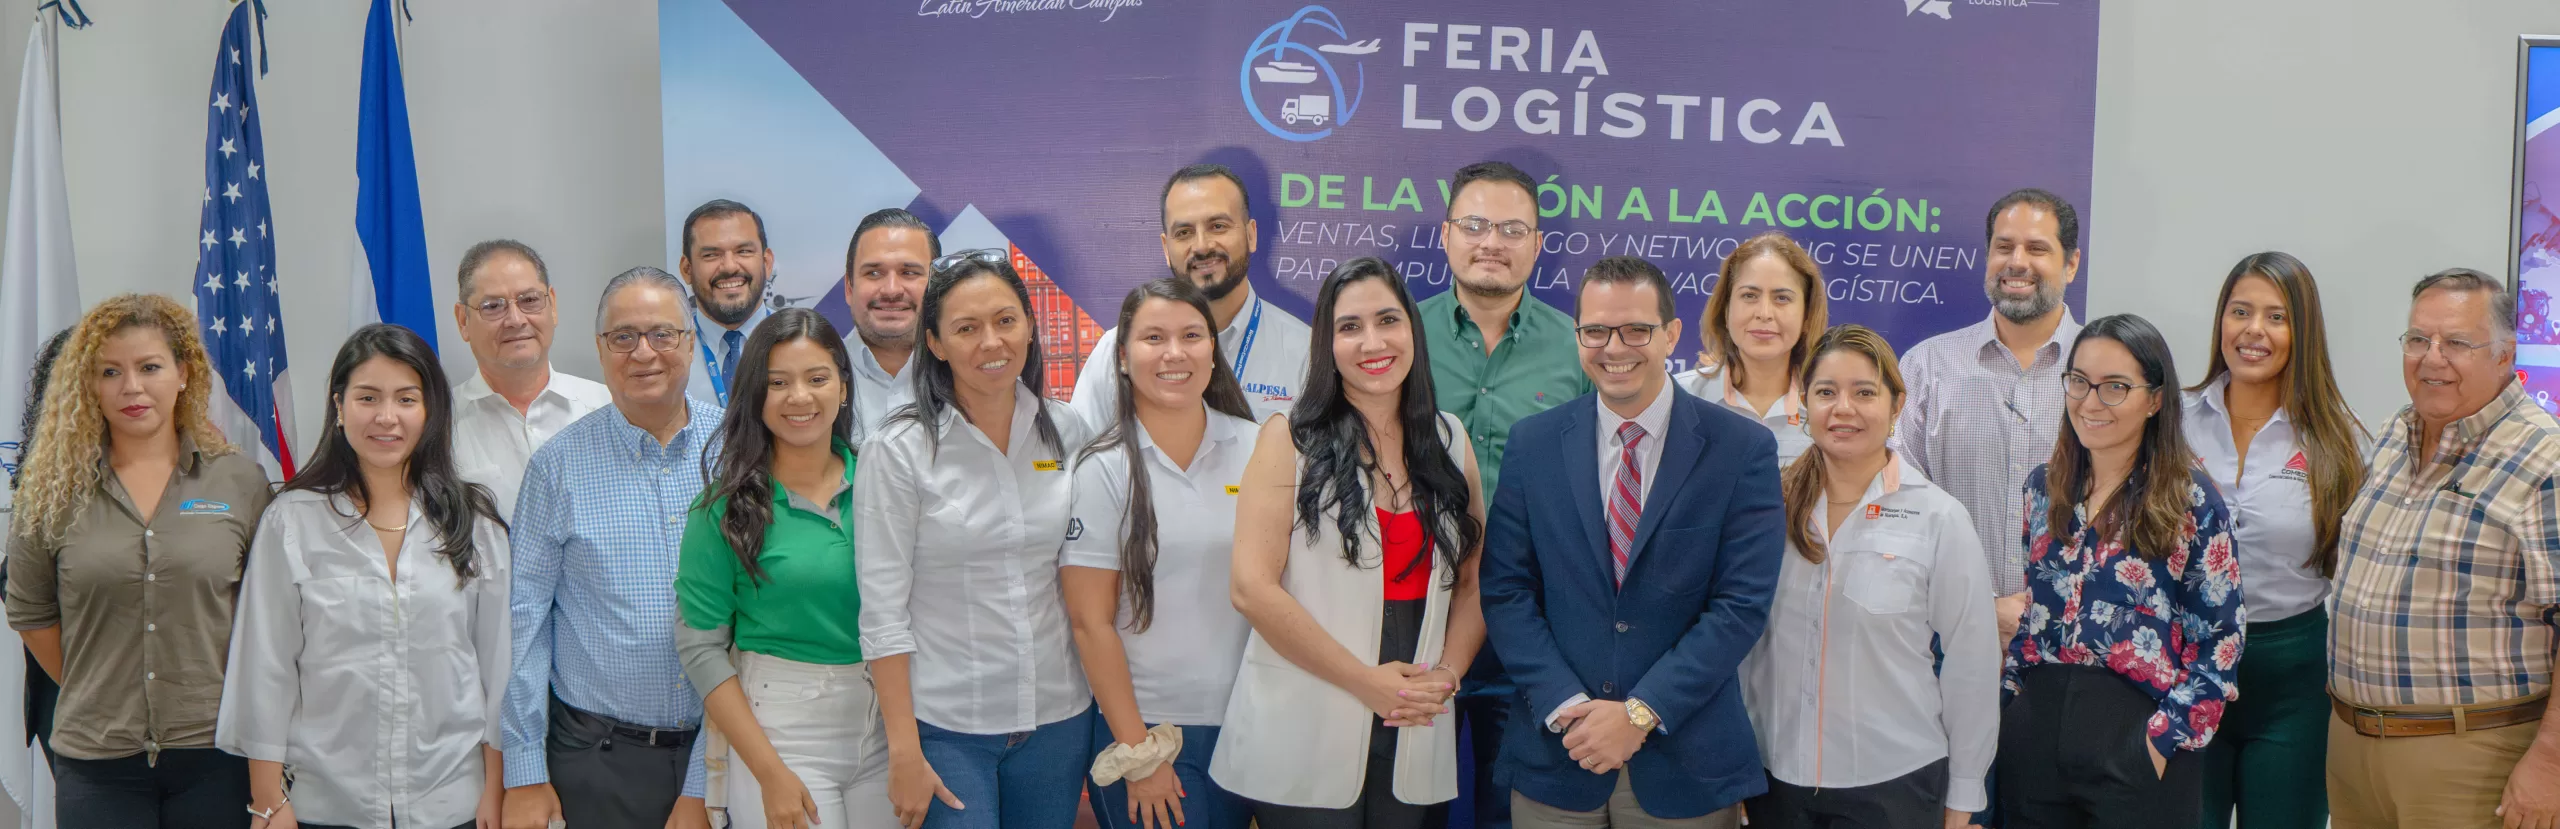 Keiser University Lanza la Segunda Edición de la Feria Logística en Nicaragua